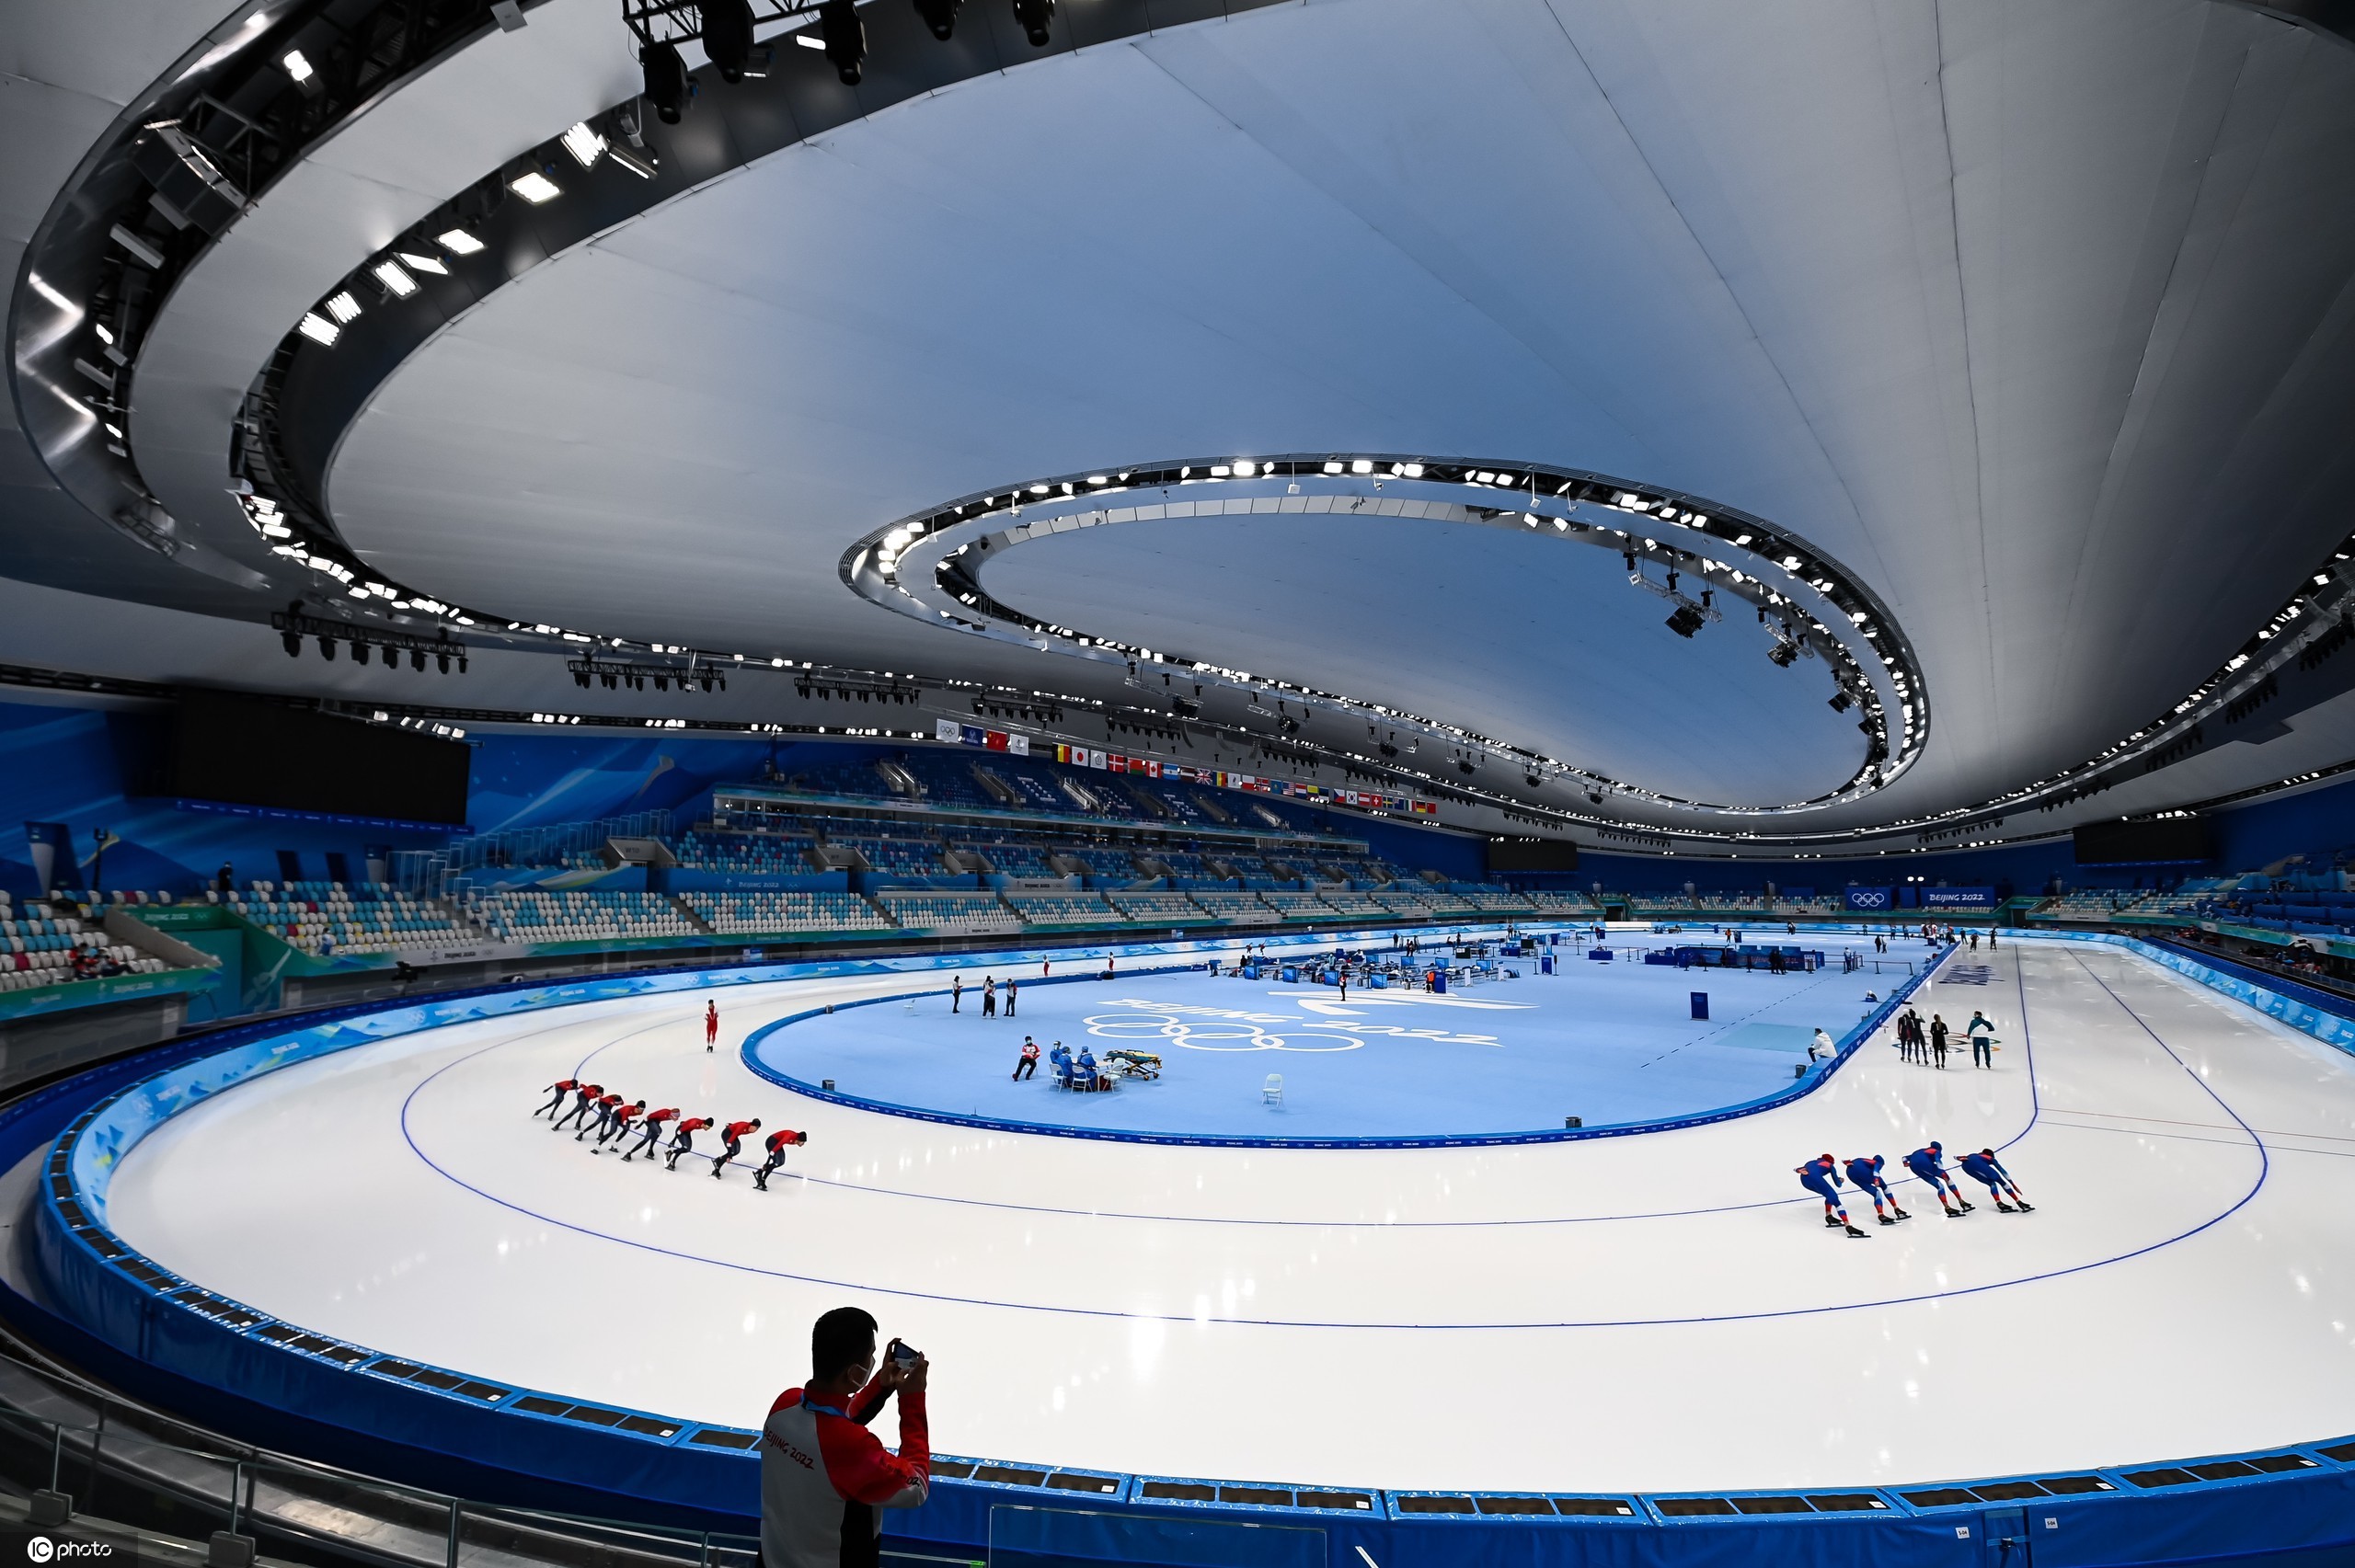 当日,中国速度滑冰队在国家速滑馆冰丝带进行训练,备战北京冬奥会